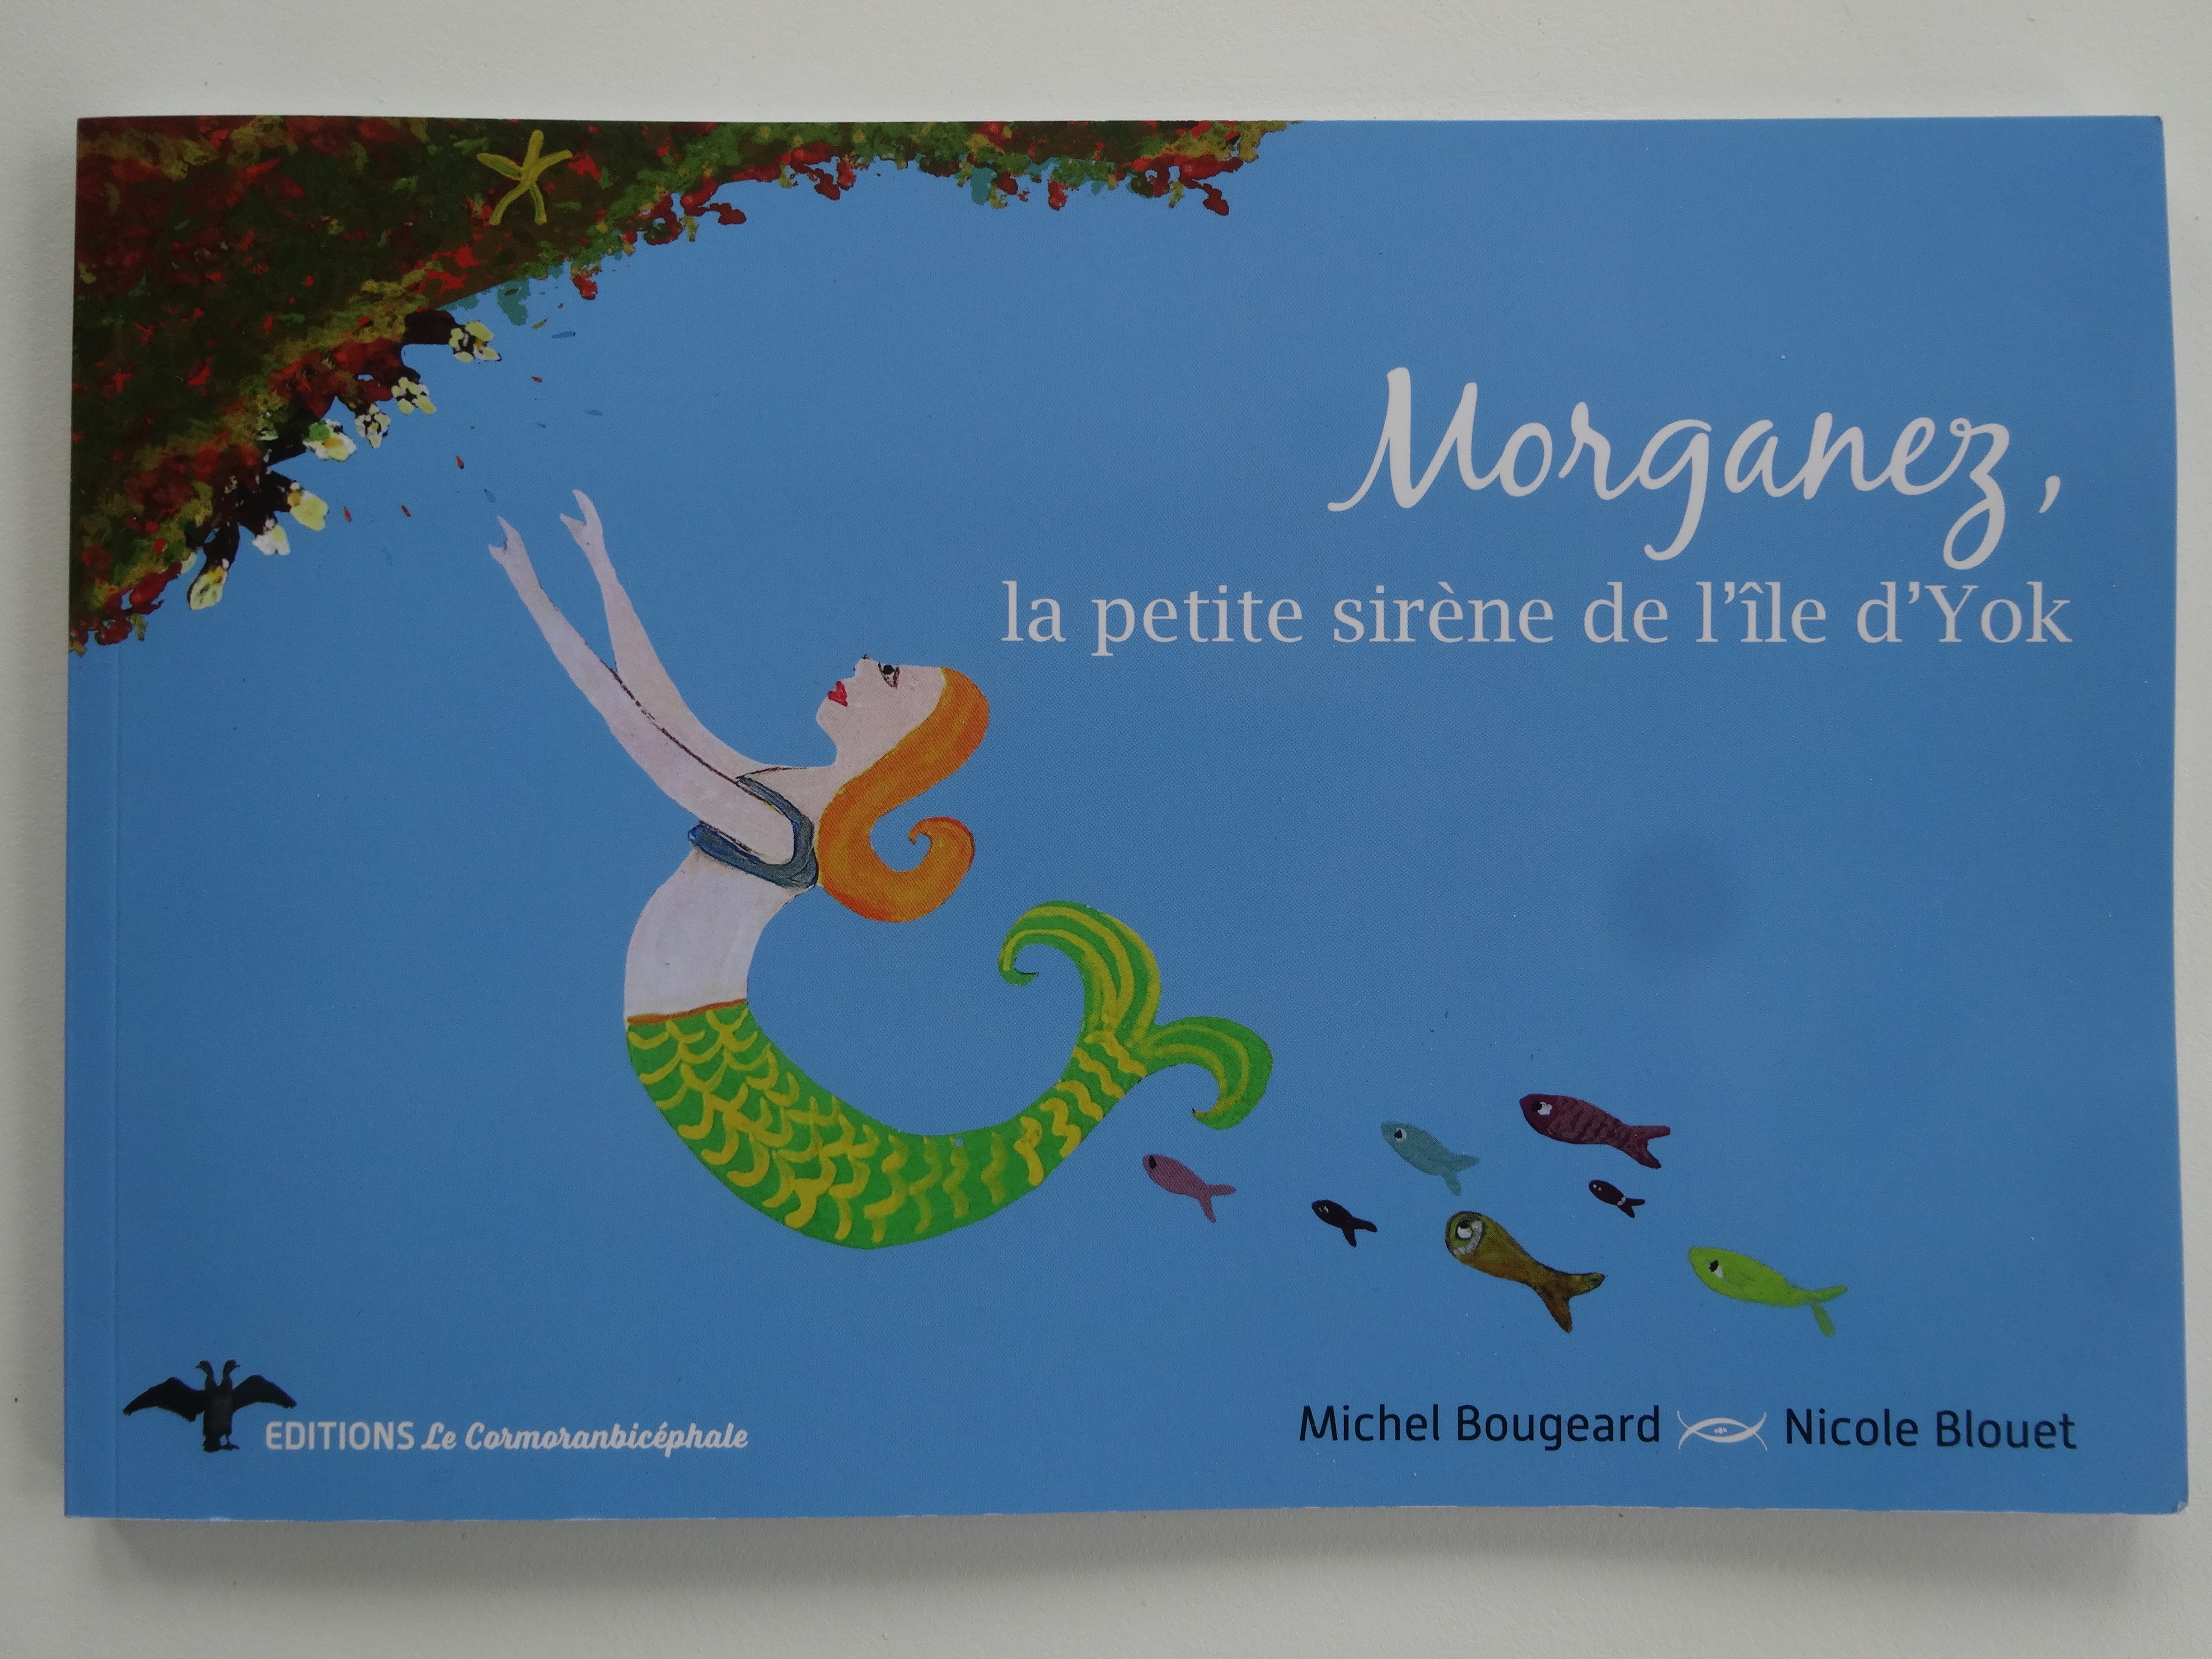 Morganez, la petite sirène de l’île d’Yok (Michel Bougeard)